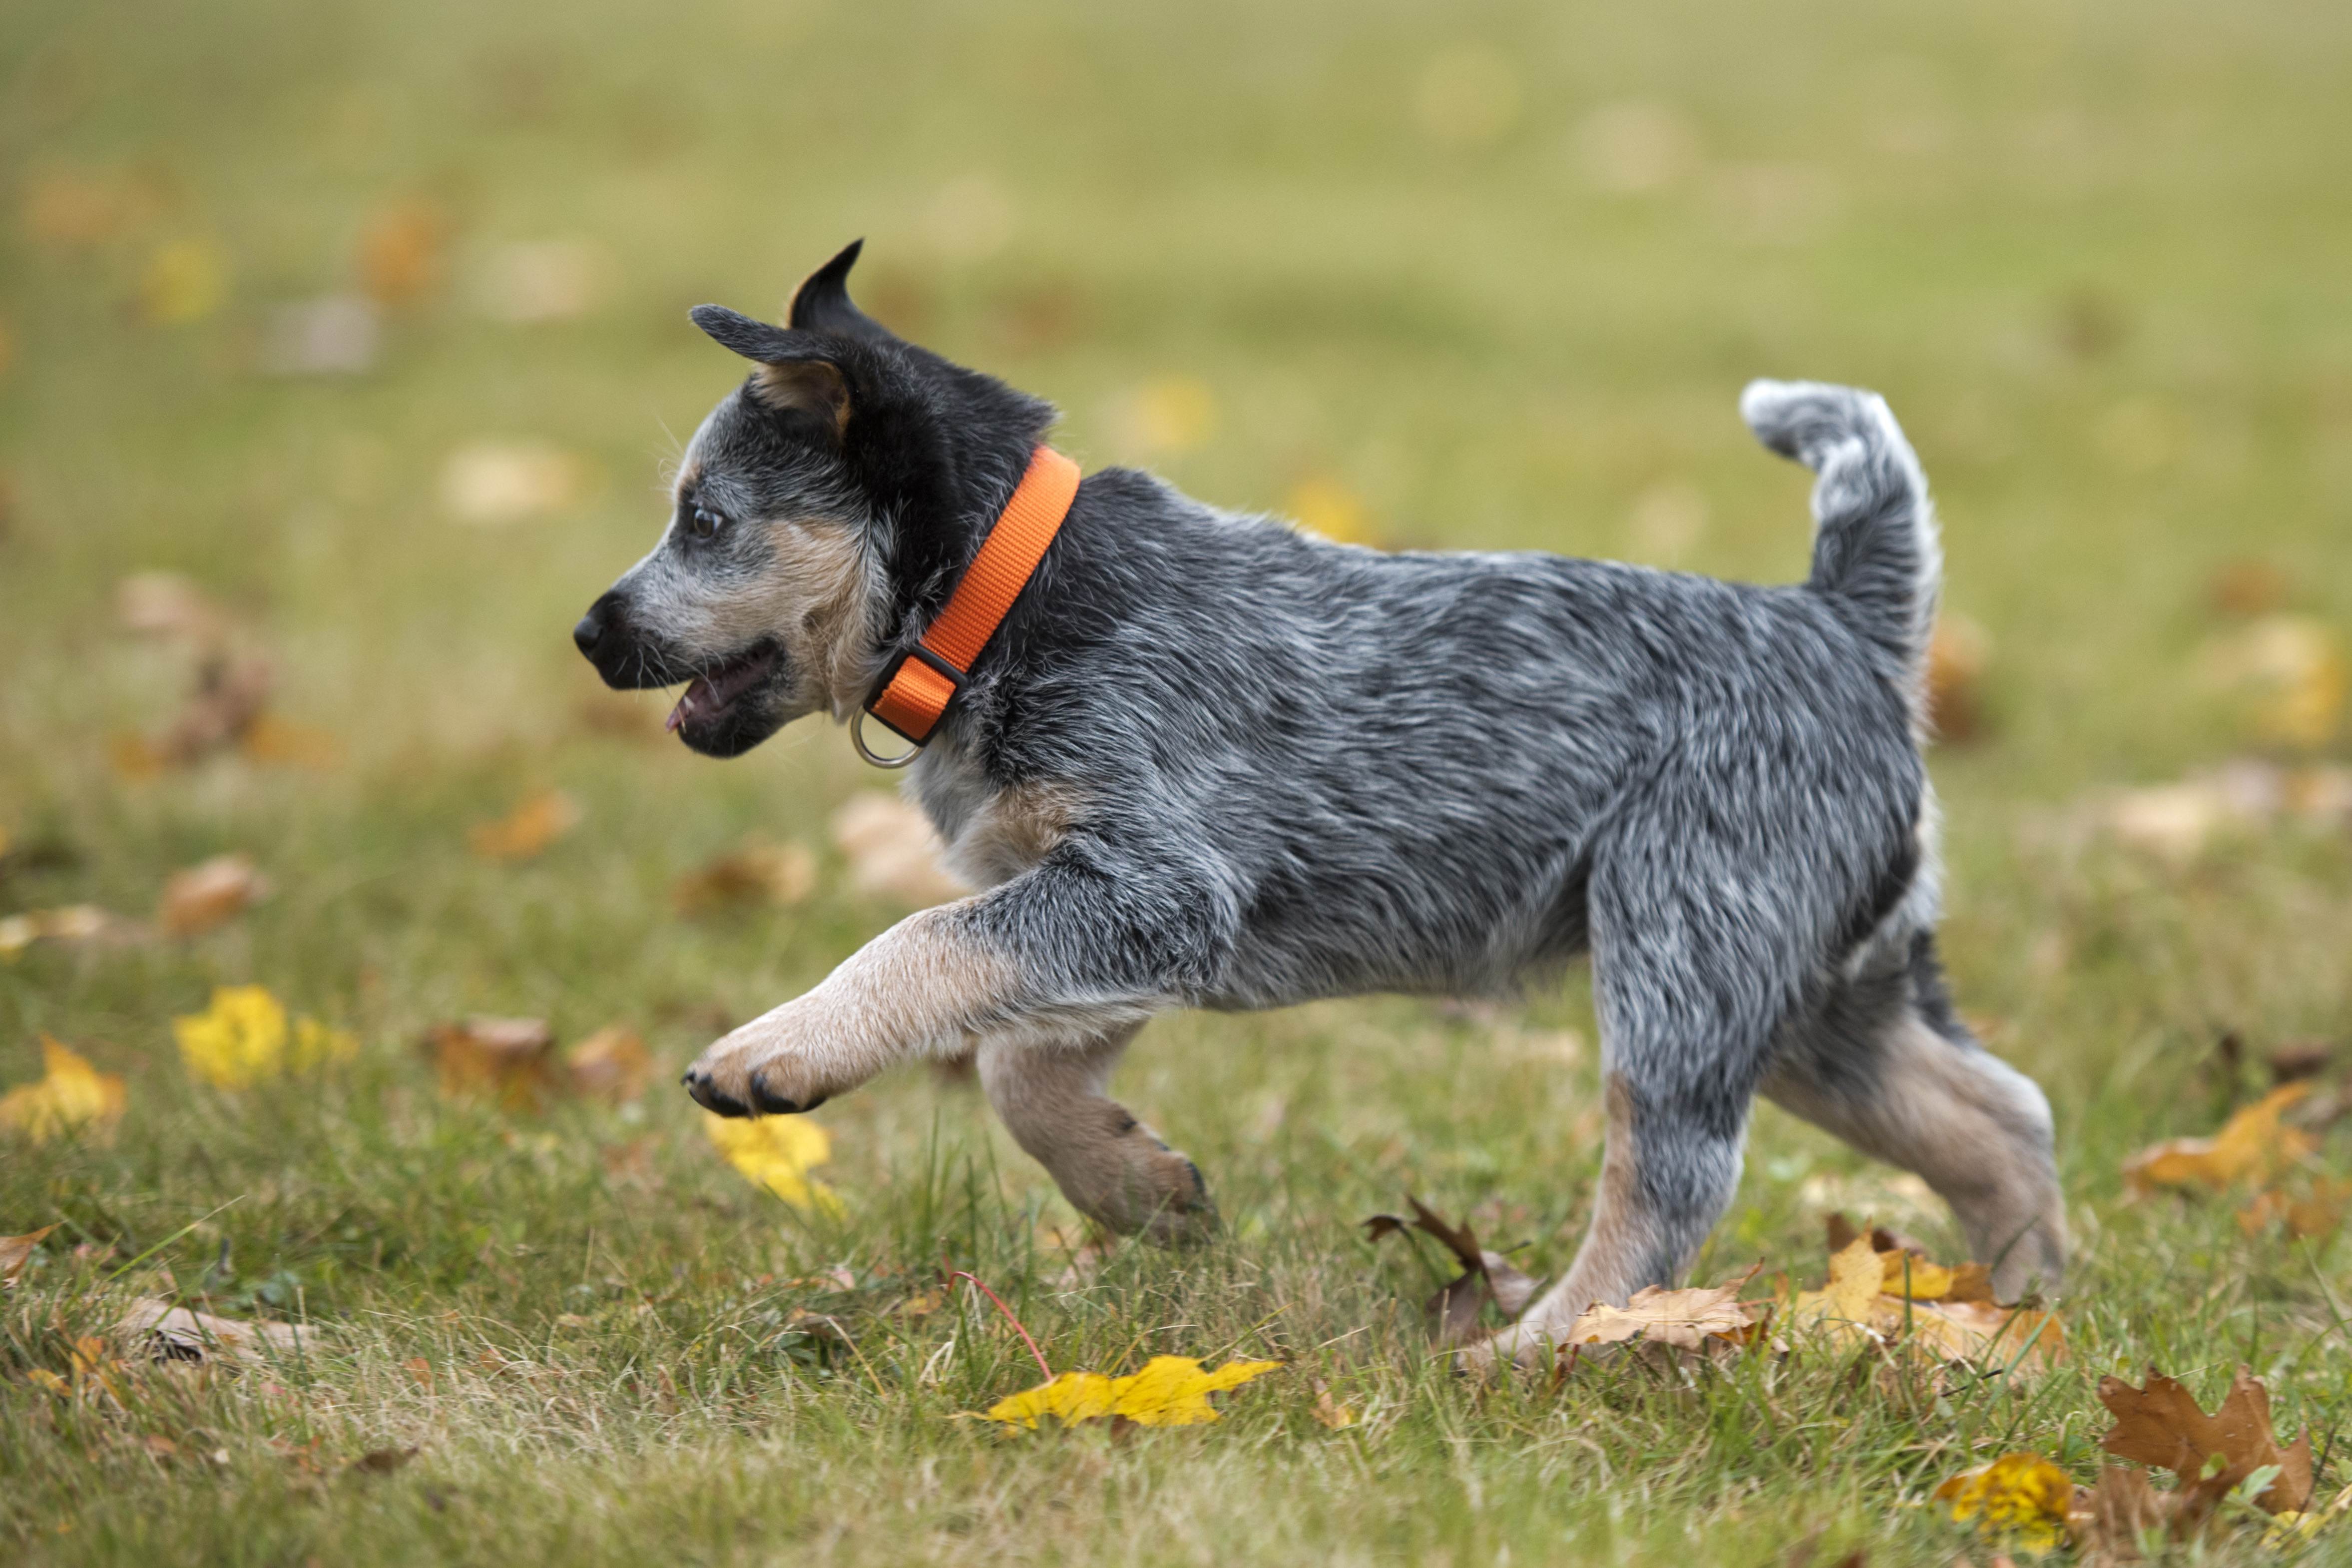 Австралийская пастушья собака: описание и содержание породы